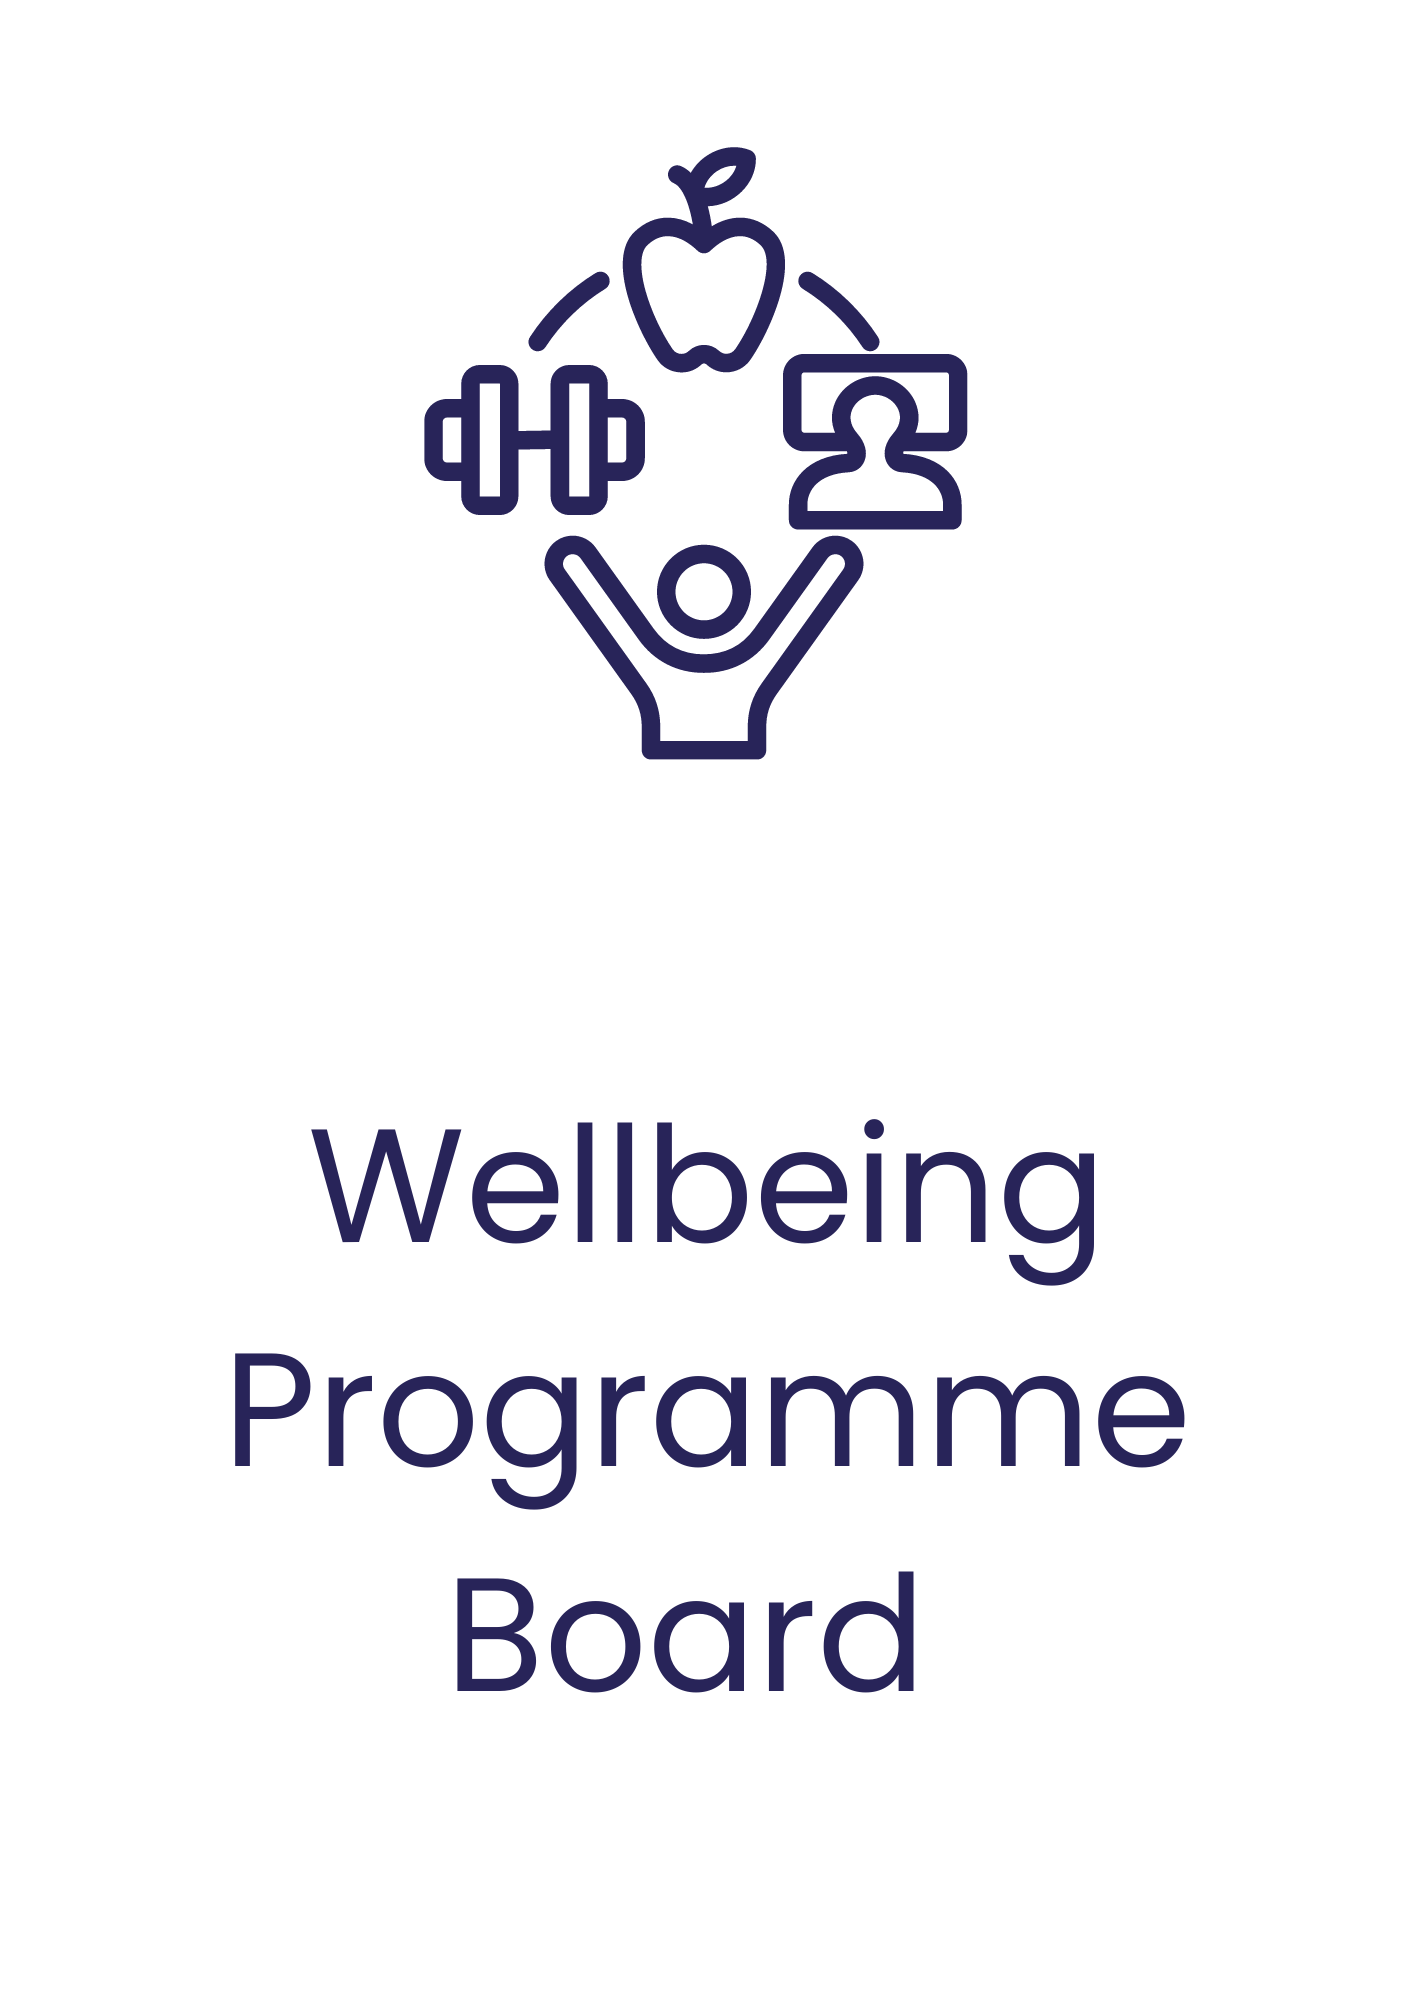 Wellbeing Board